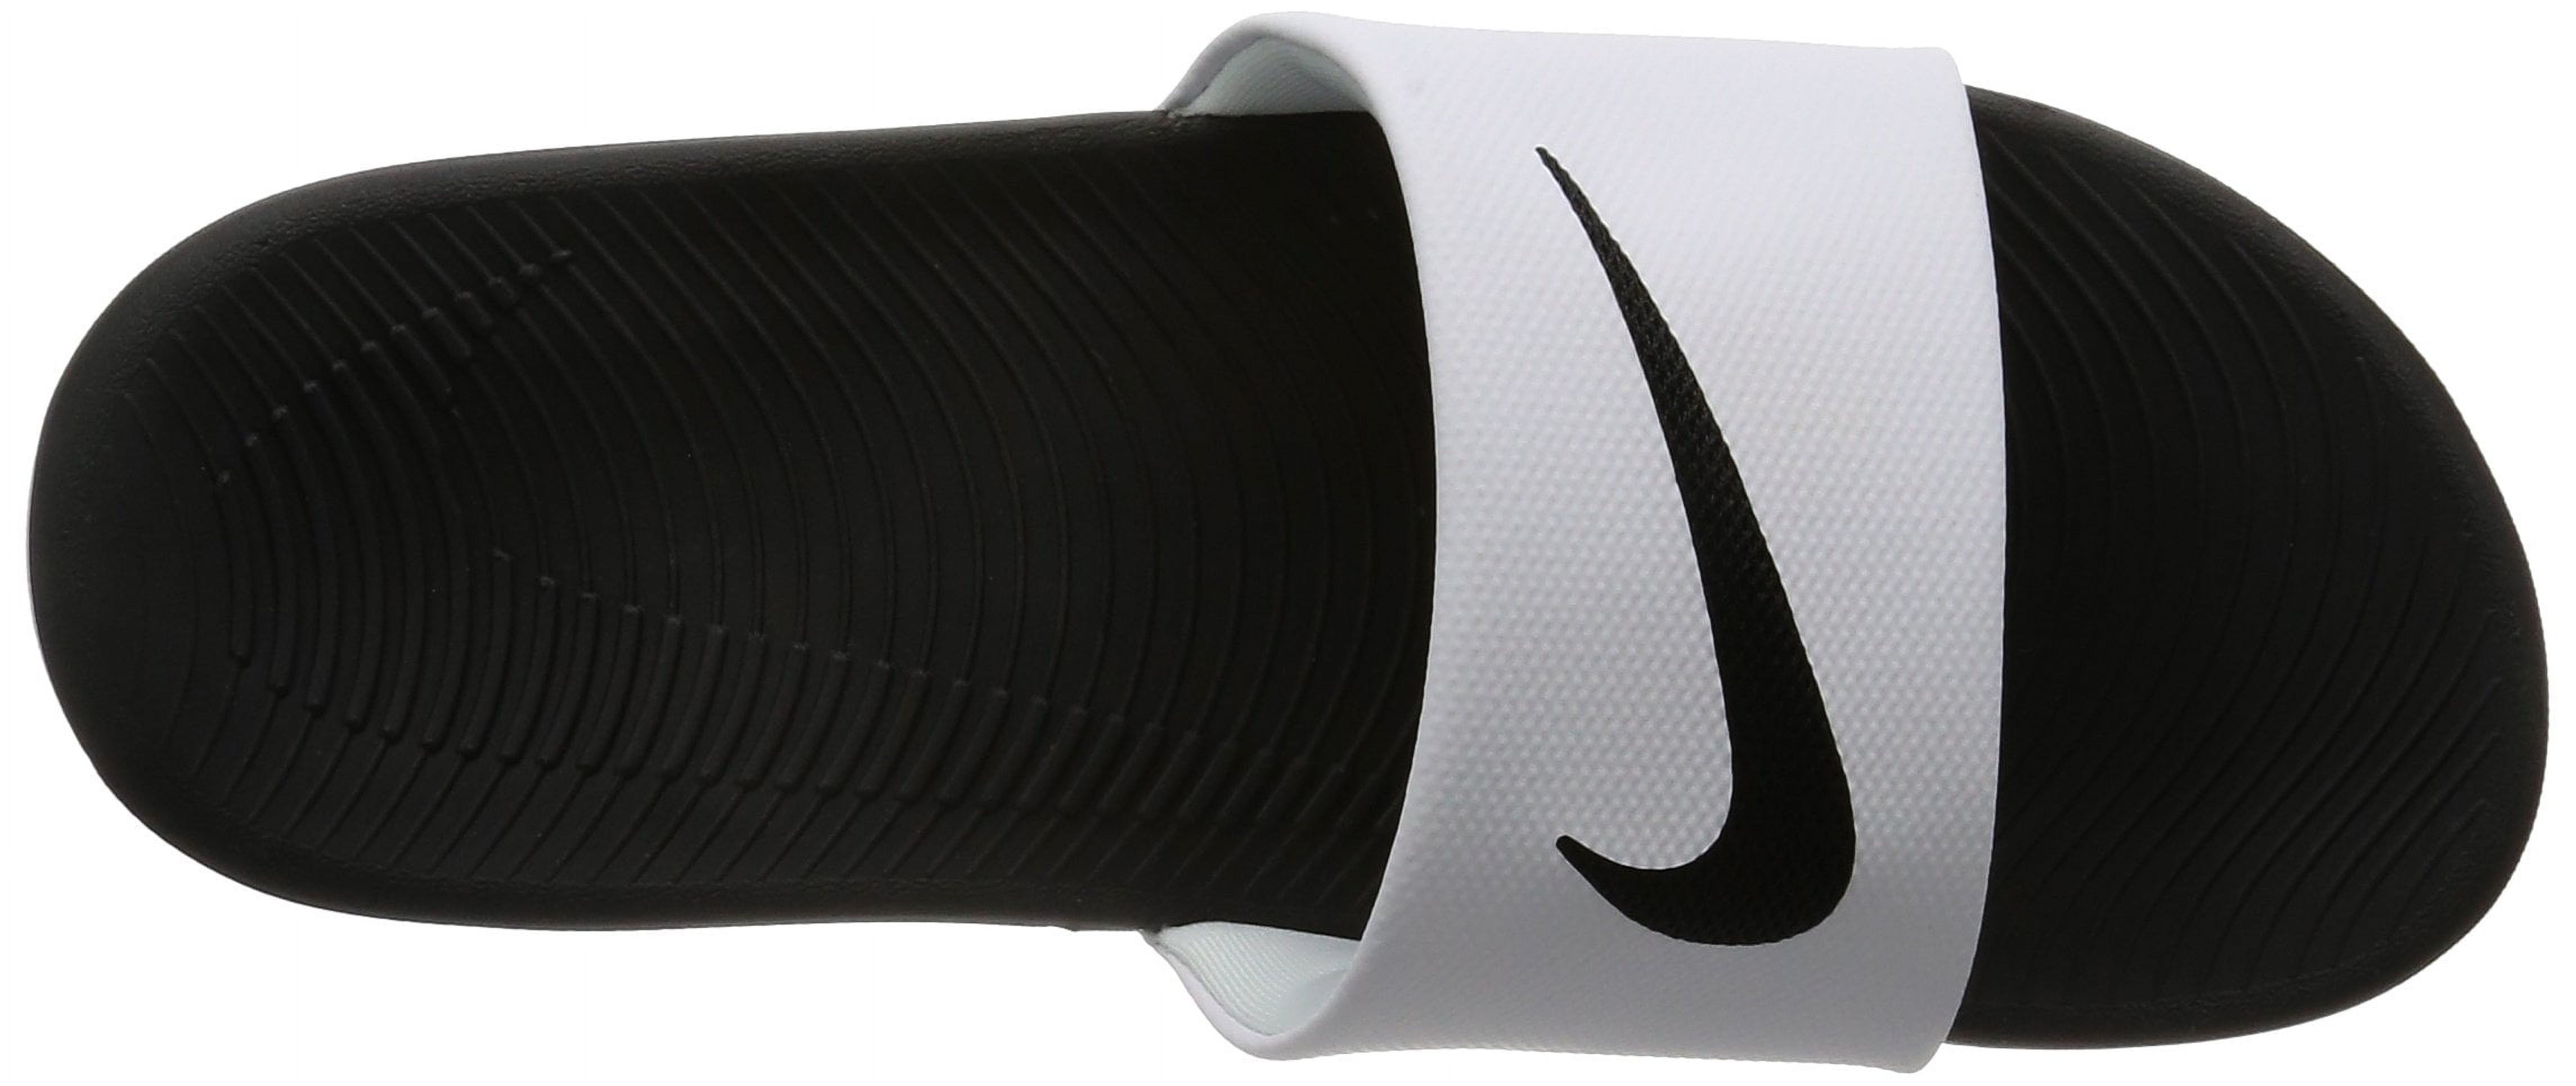 Nike Kawa Youth Slides White | Black Size 3 - image 2 of 7